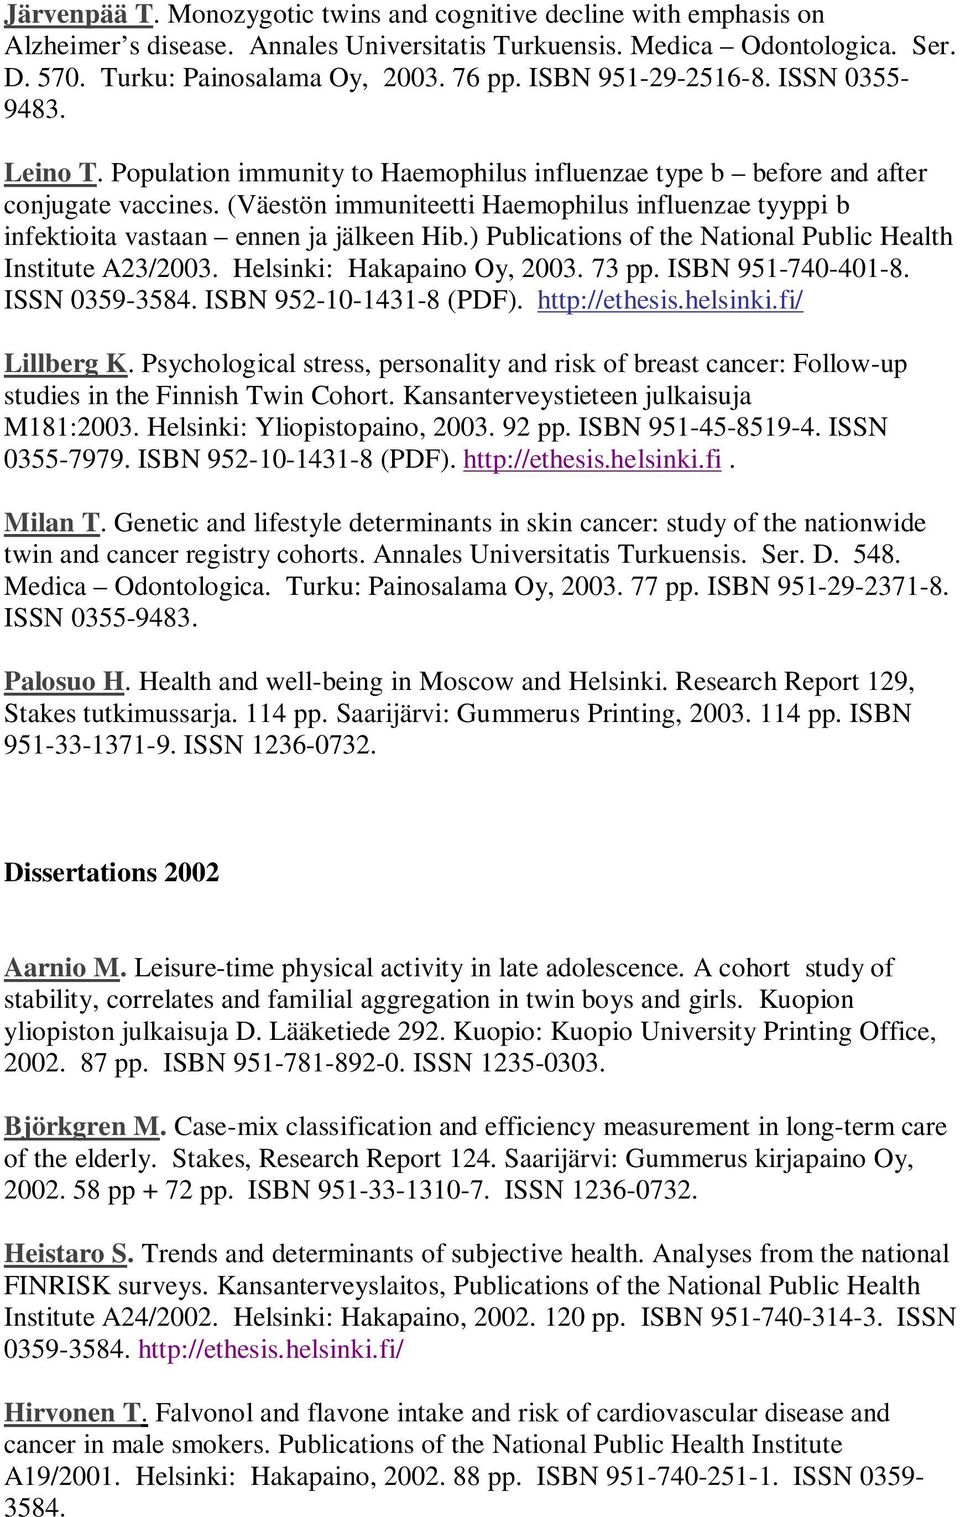 (Väestön immuniteetti Haemophilus influenzae tyyppi b infektioita vastaan ennen ja jälkeen Hib.) Publications of the National Public Health Institute A23/2003. Helsinki: Hakapaino Oy, 2003. 73 pp.